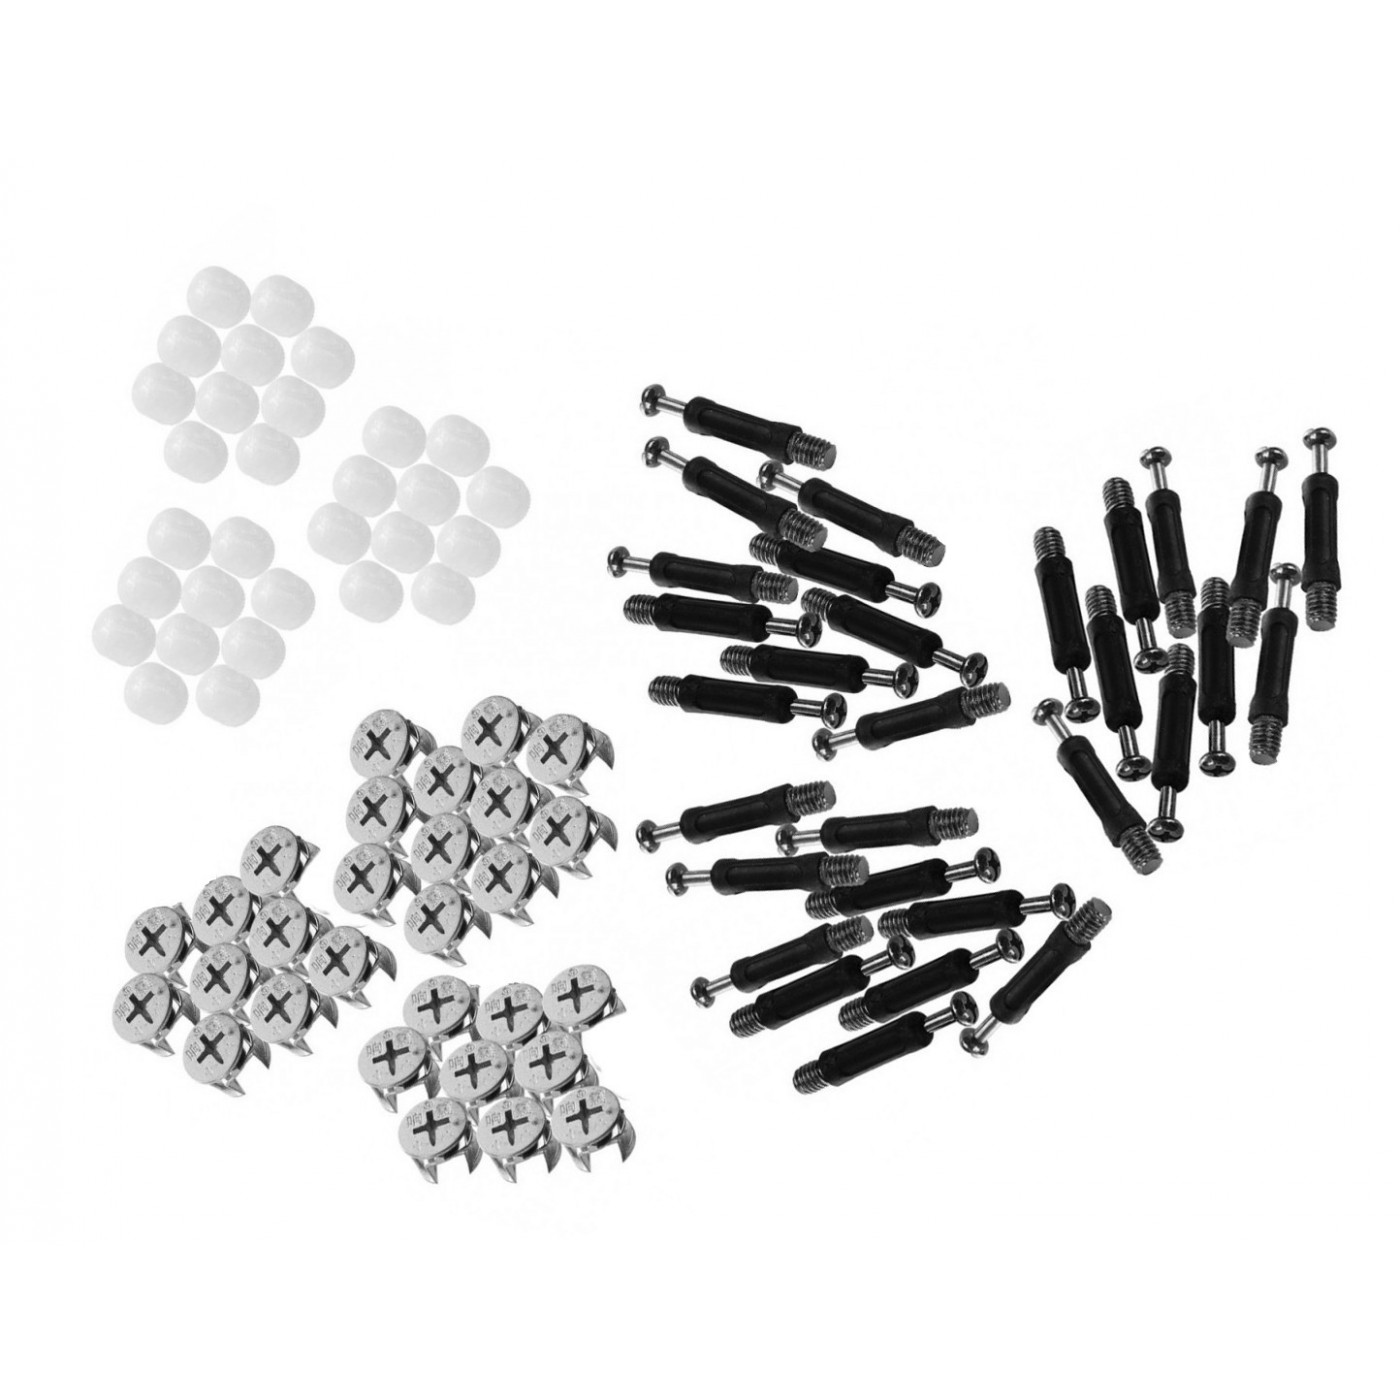 30 sets of minifix furniture connectors